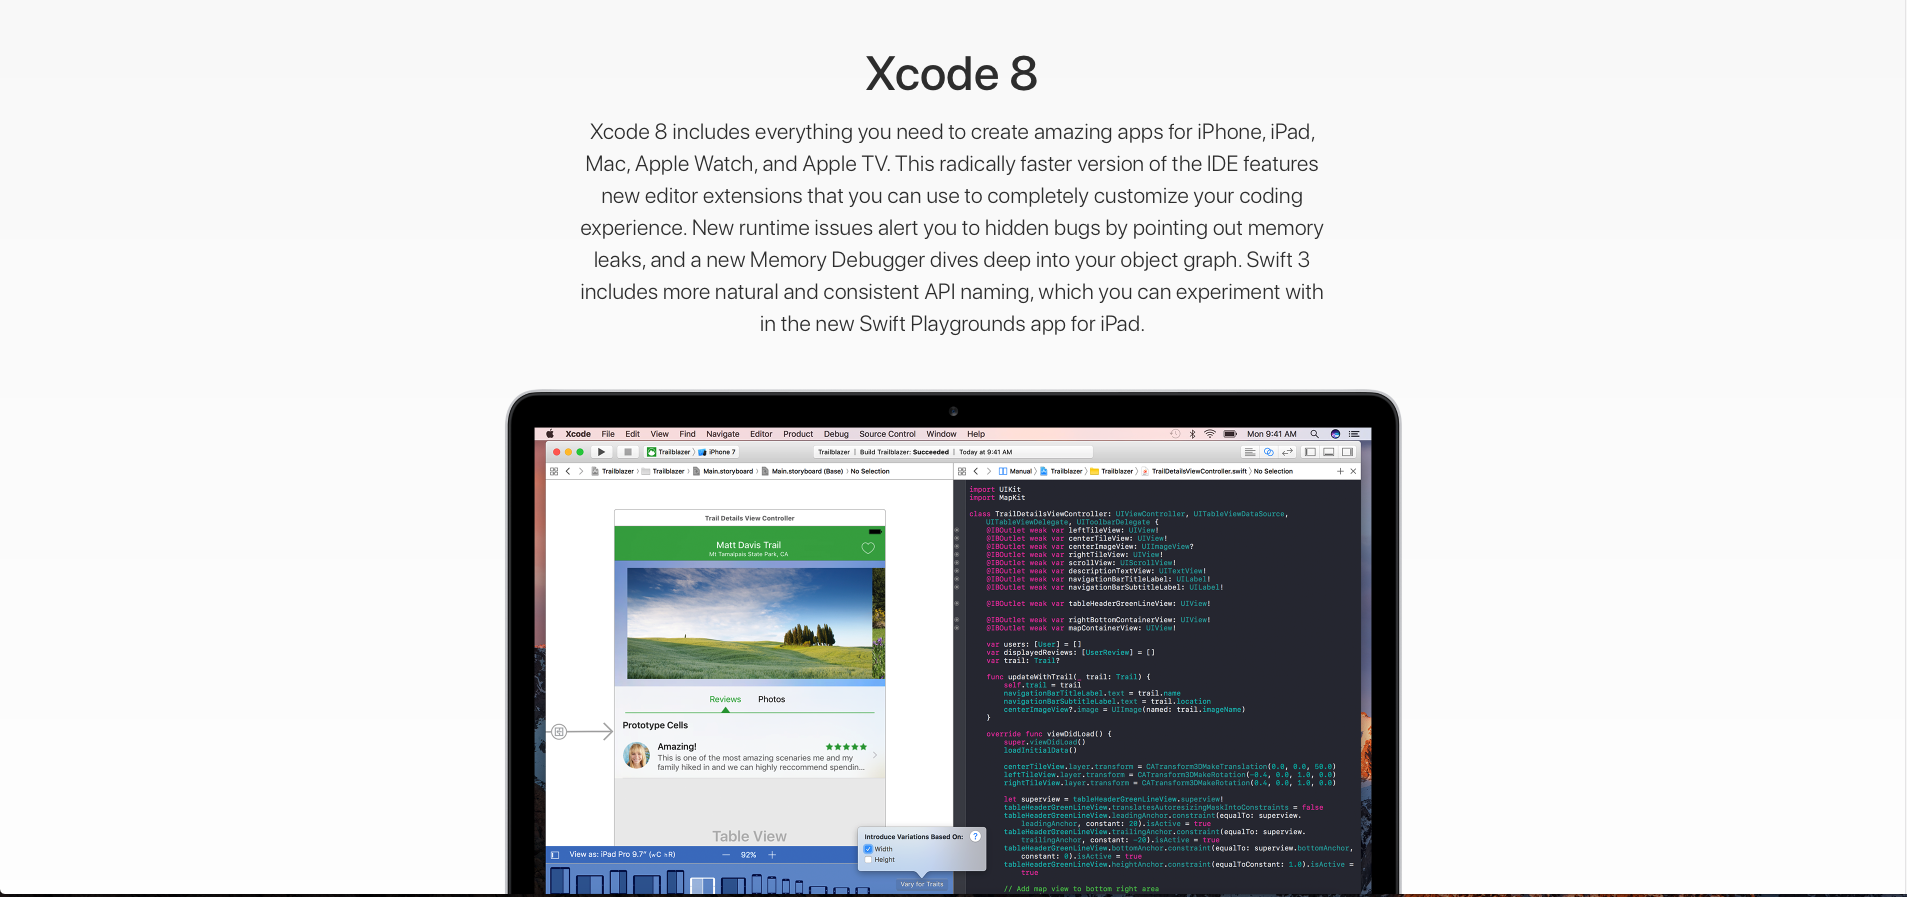 xcode 8.1 dmg download